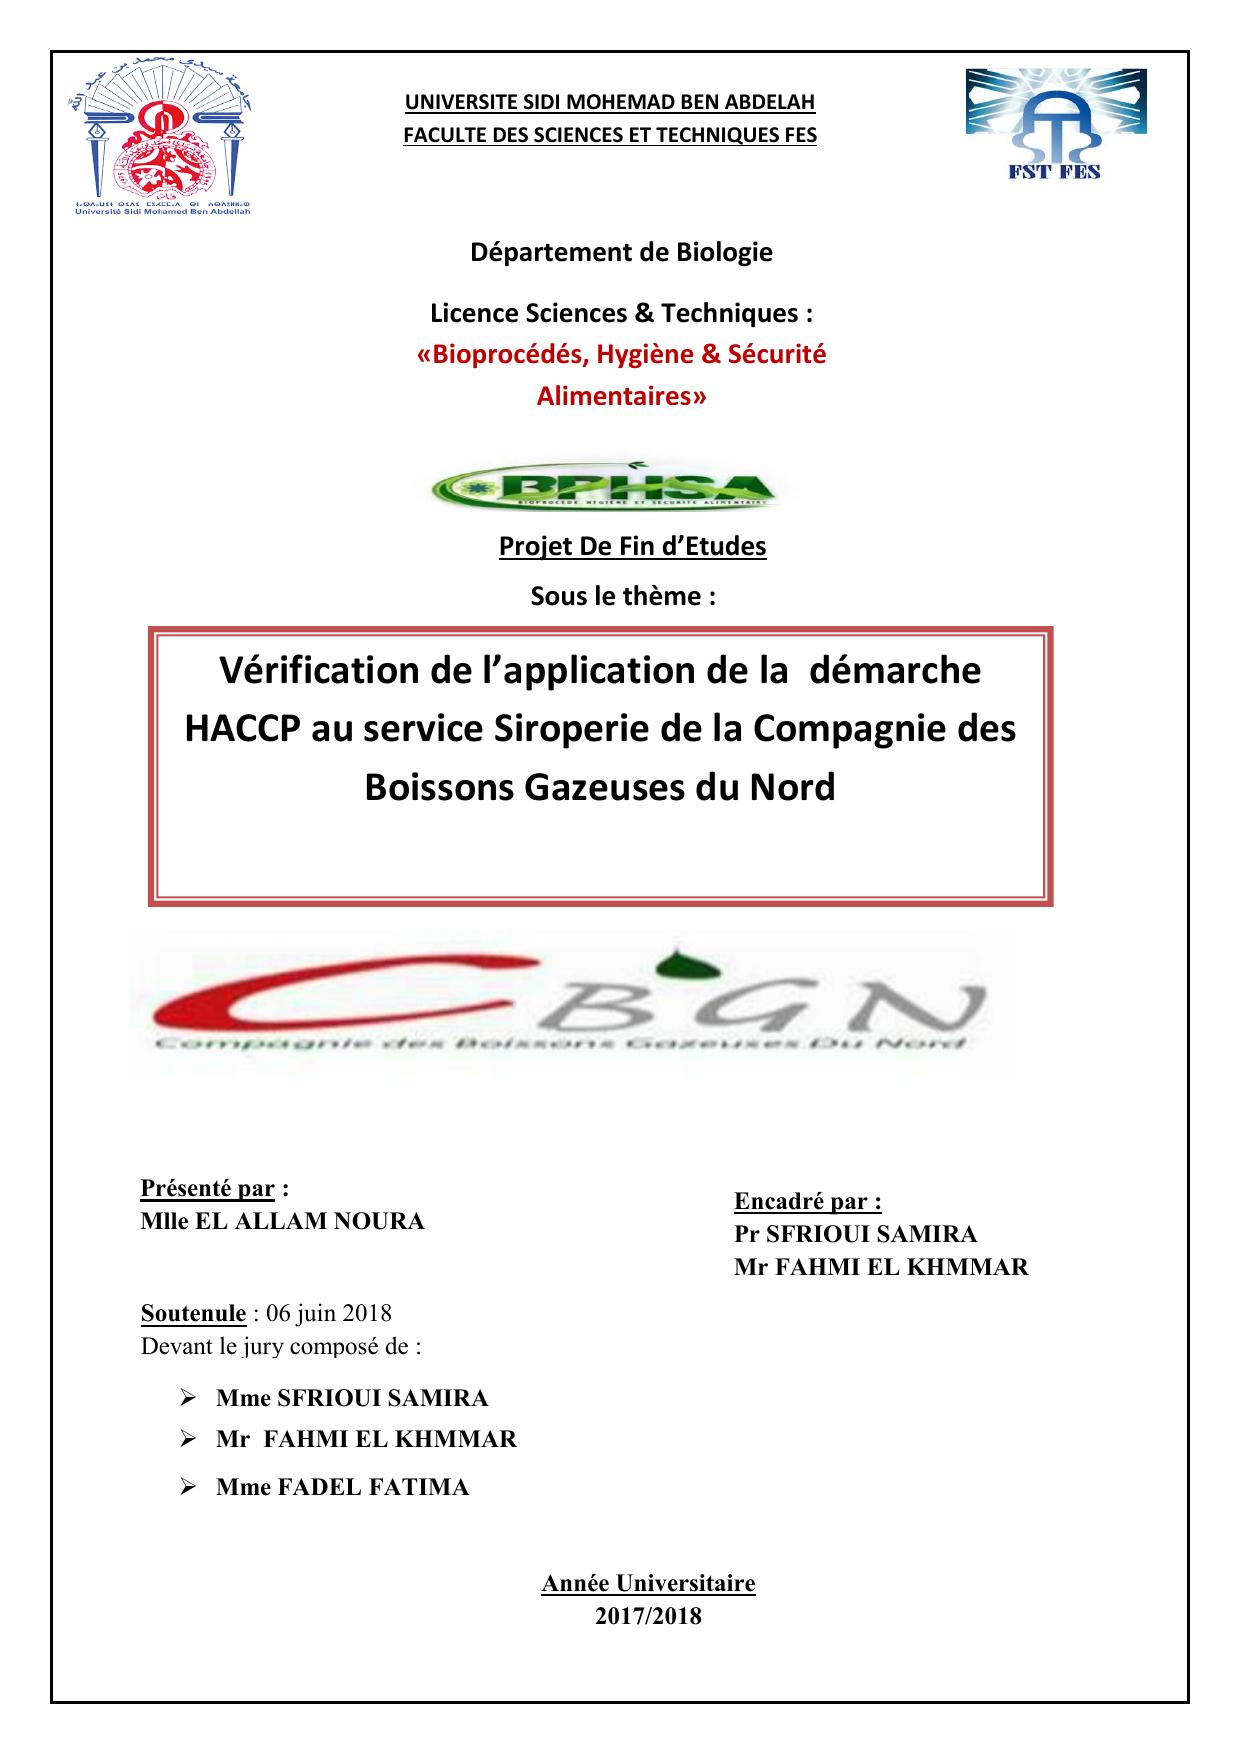 Vérification de l’application de la démarche HACCP au service Siroperie de la Compagnie des Boissons Gazeuses du Nord